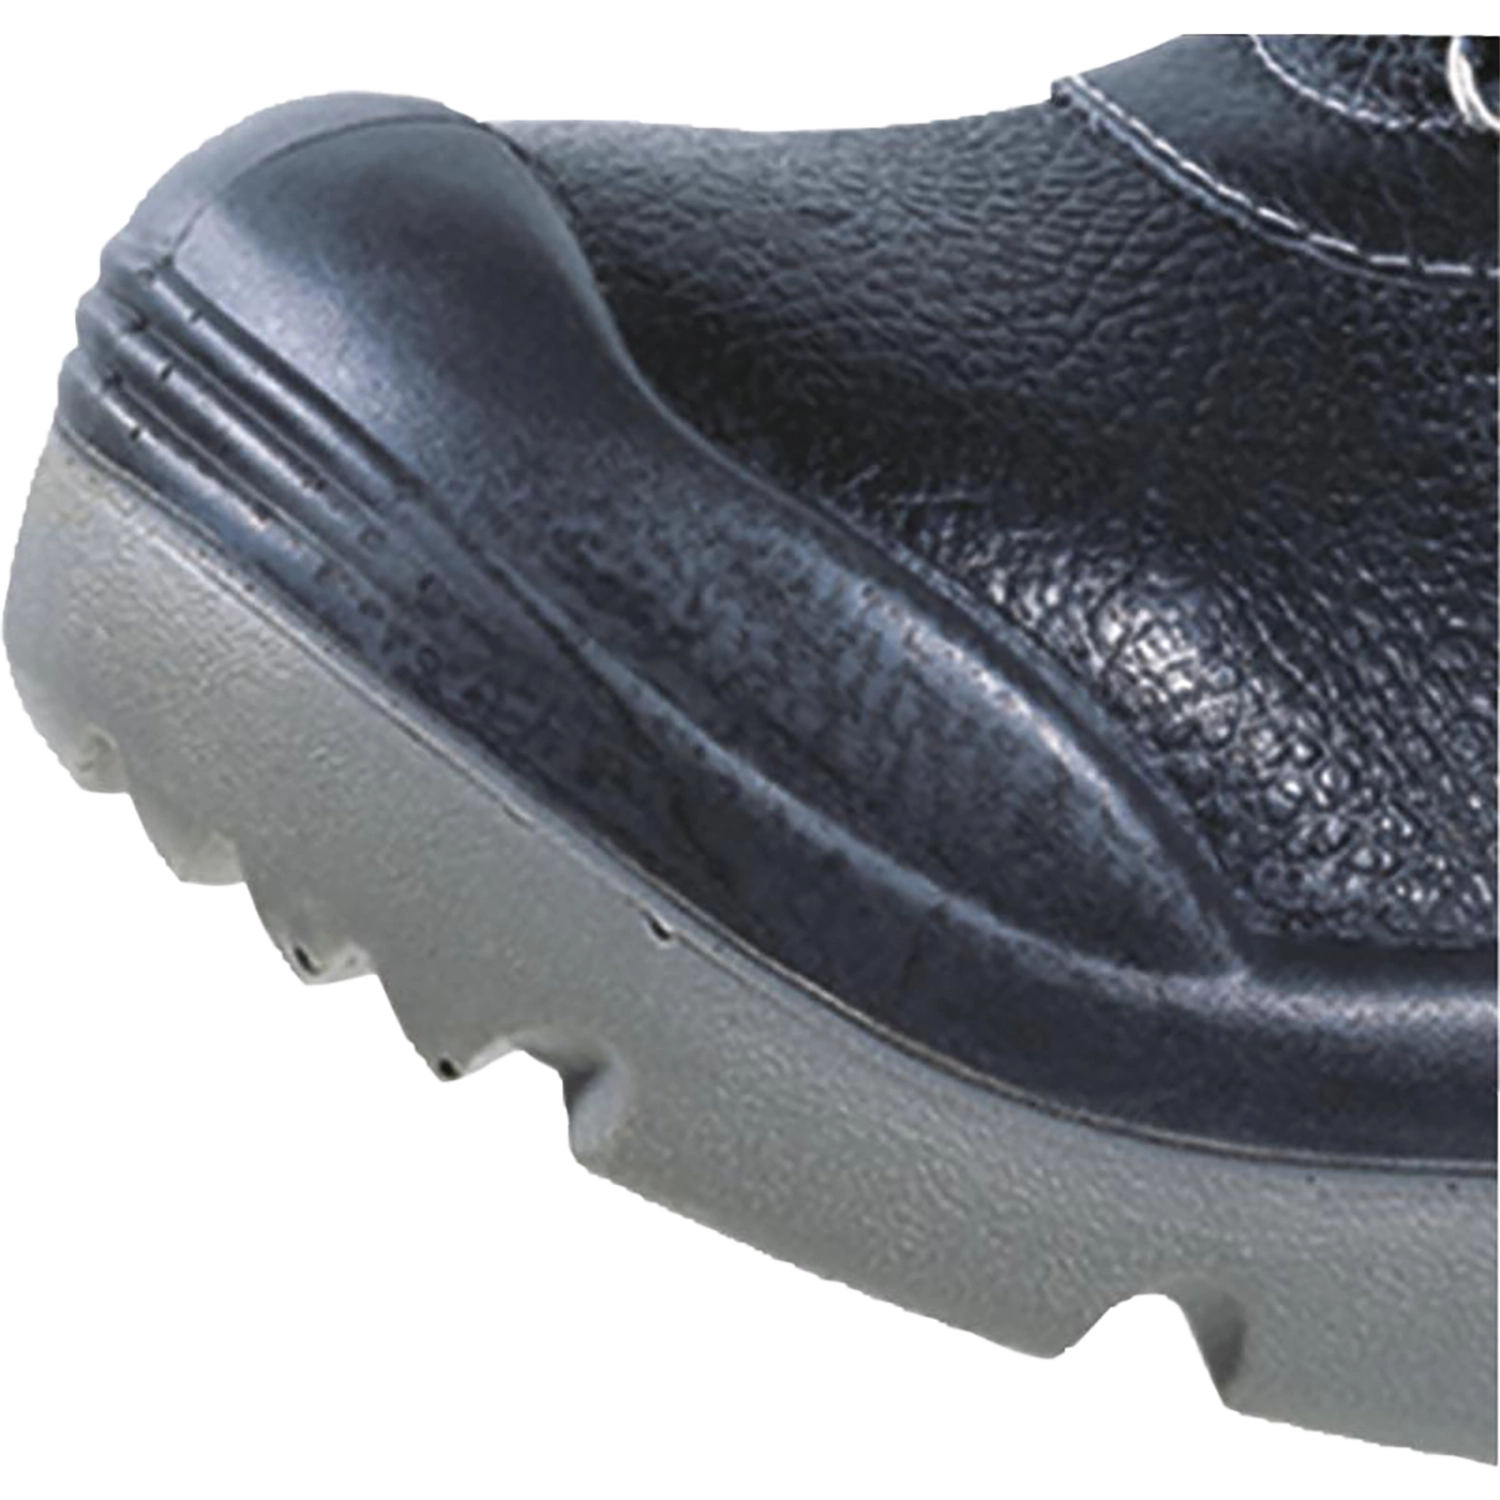 Hoog model schoenen - X-Large  - Sault S3 - zwart - maat 42